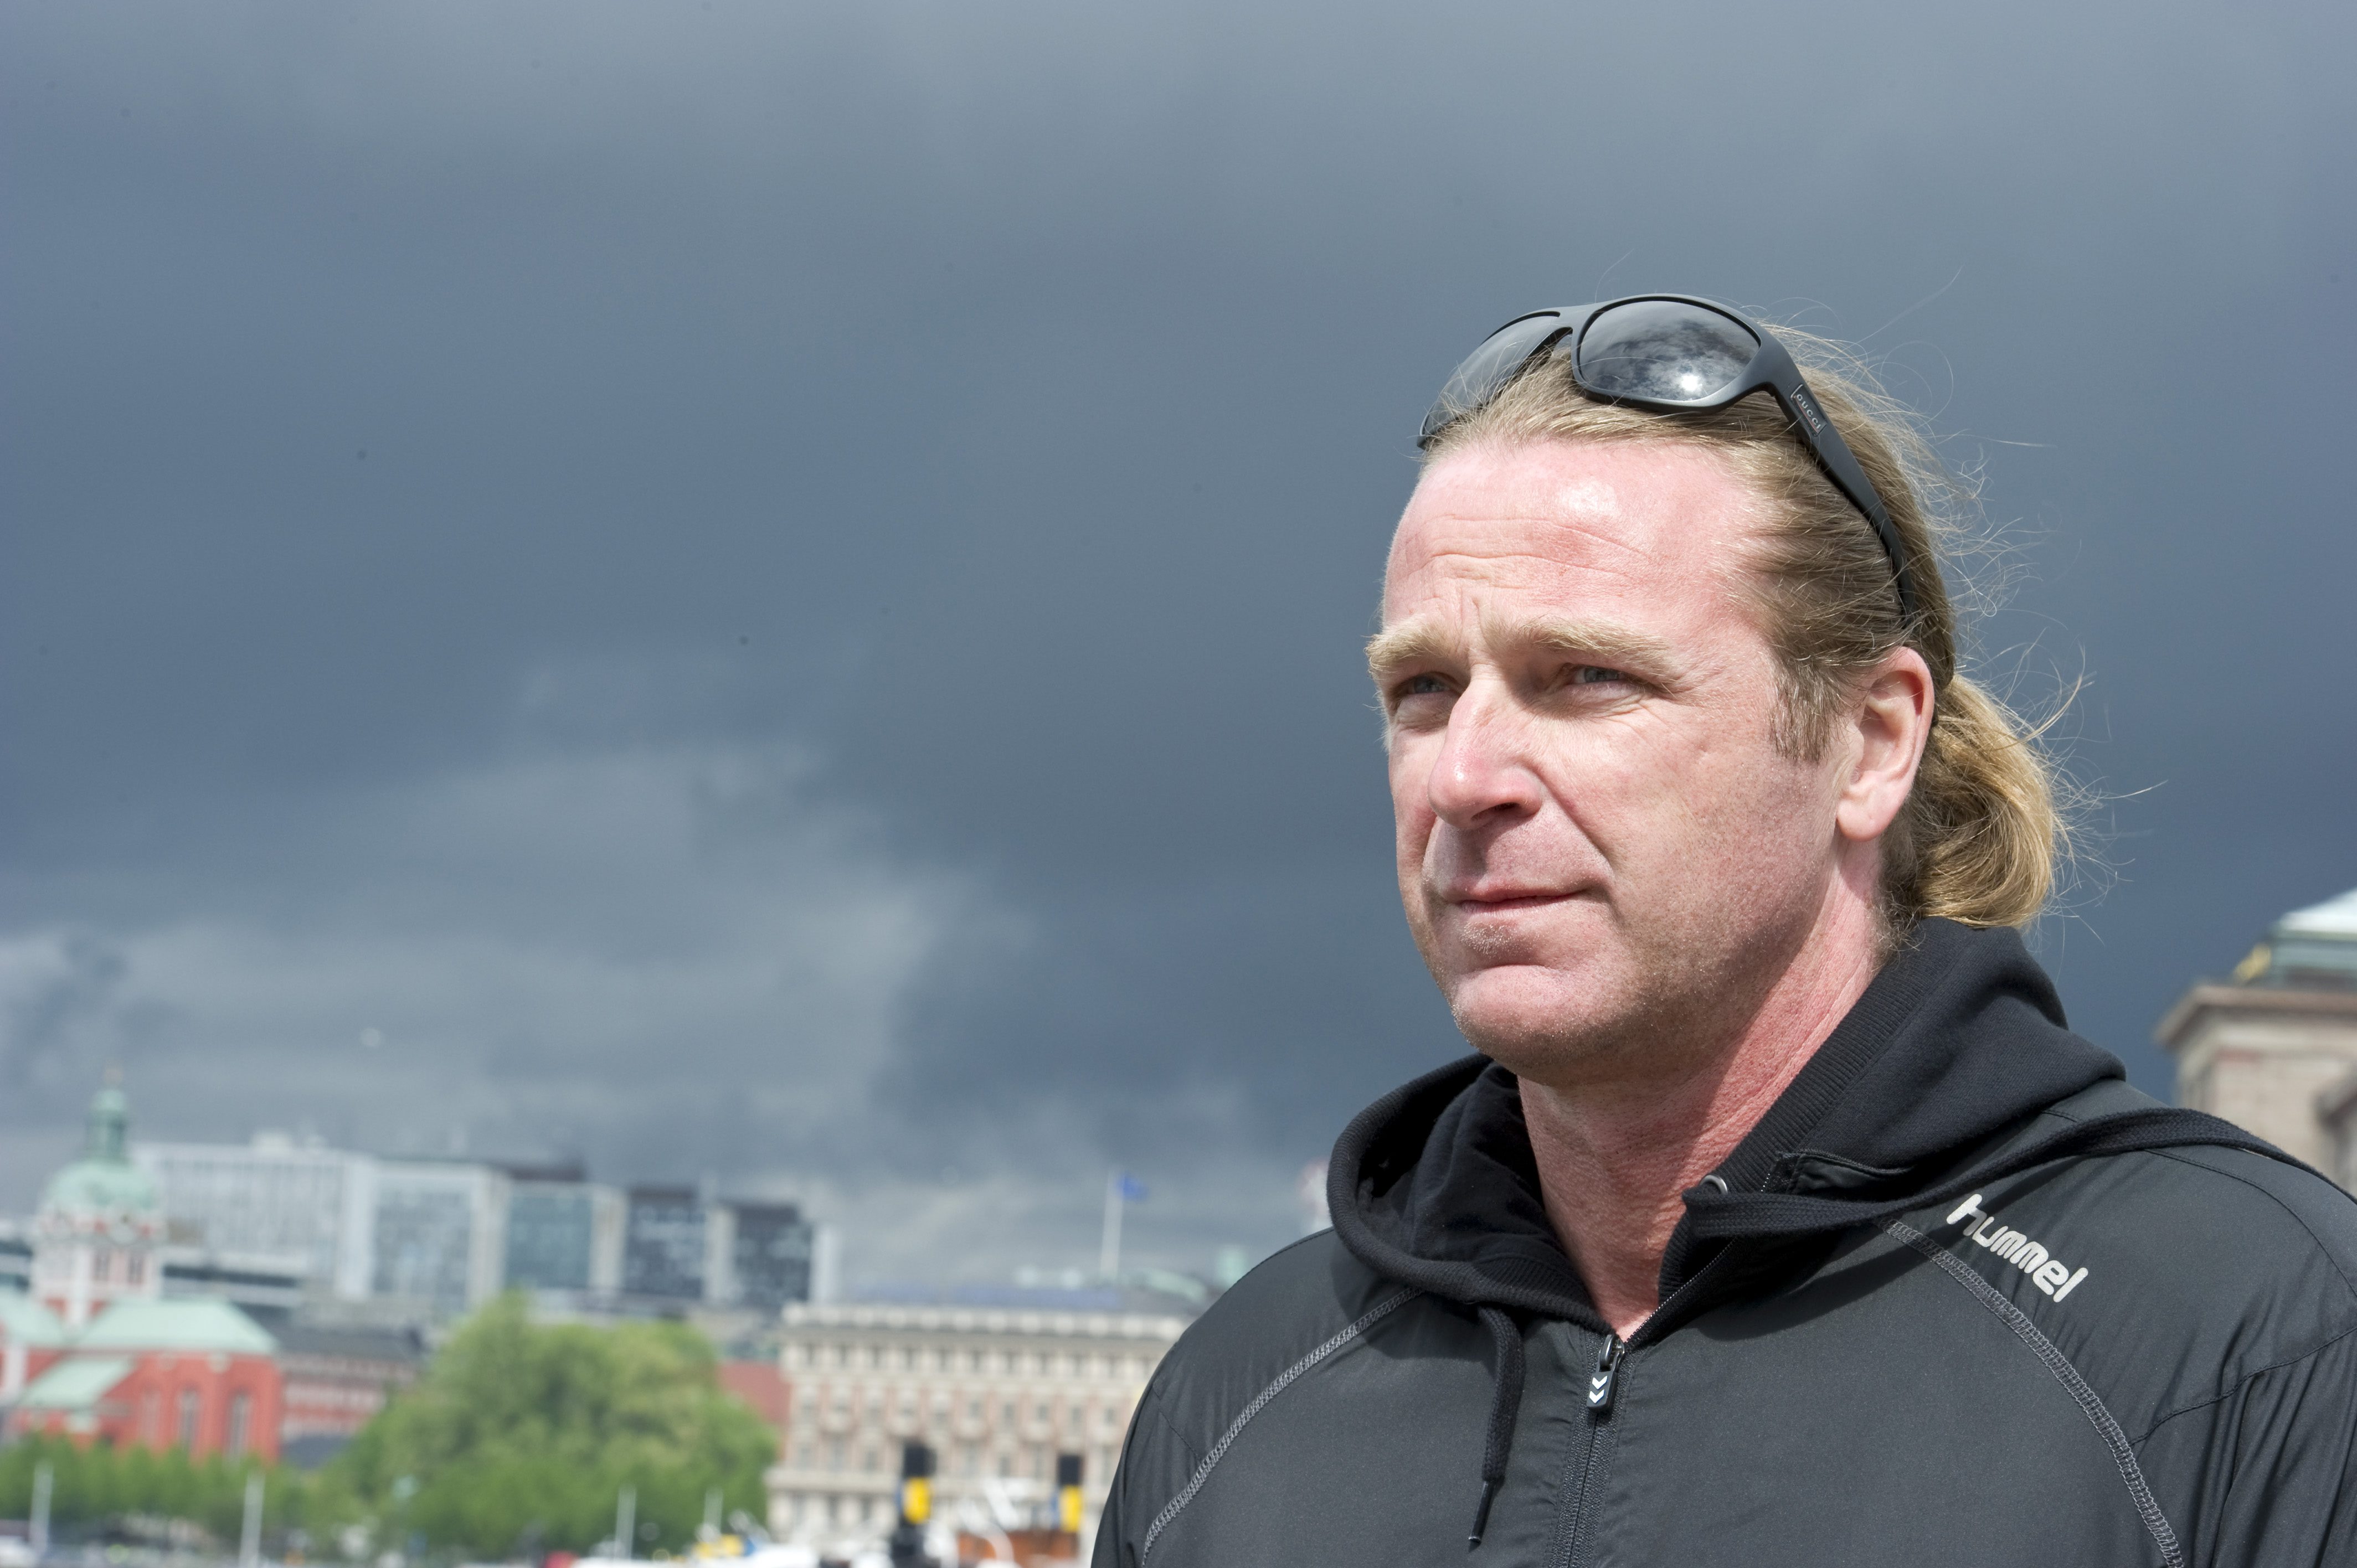 Sjöberg avslöjade i april att han blivit sexuellt utnyttjad av sin tränare.